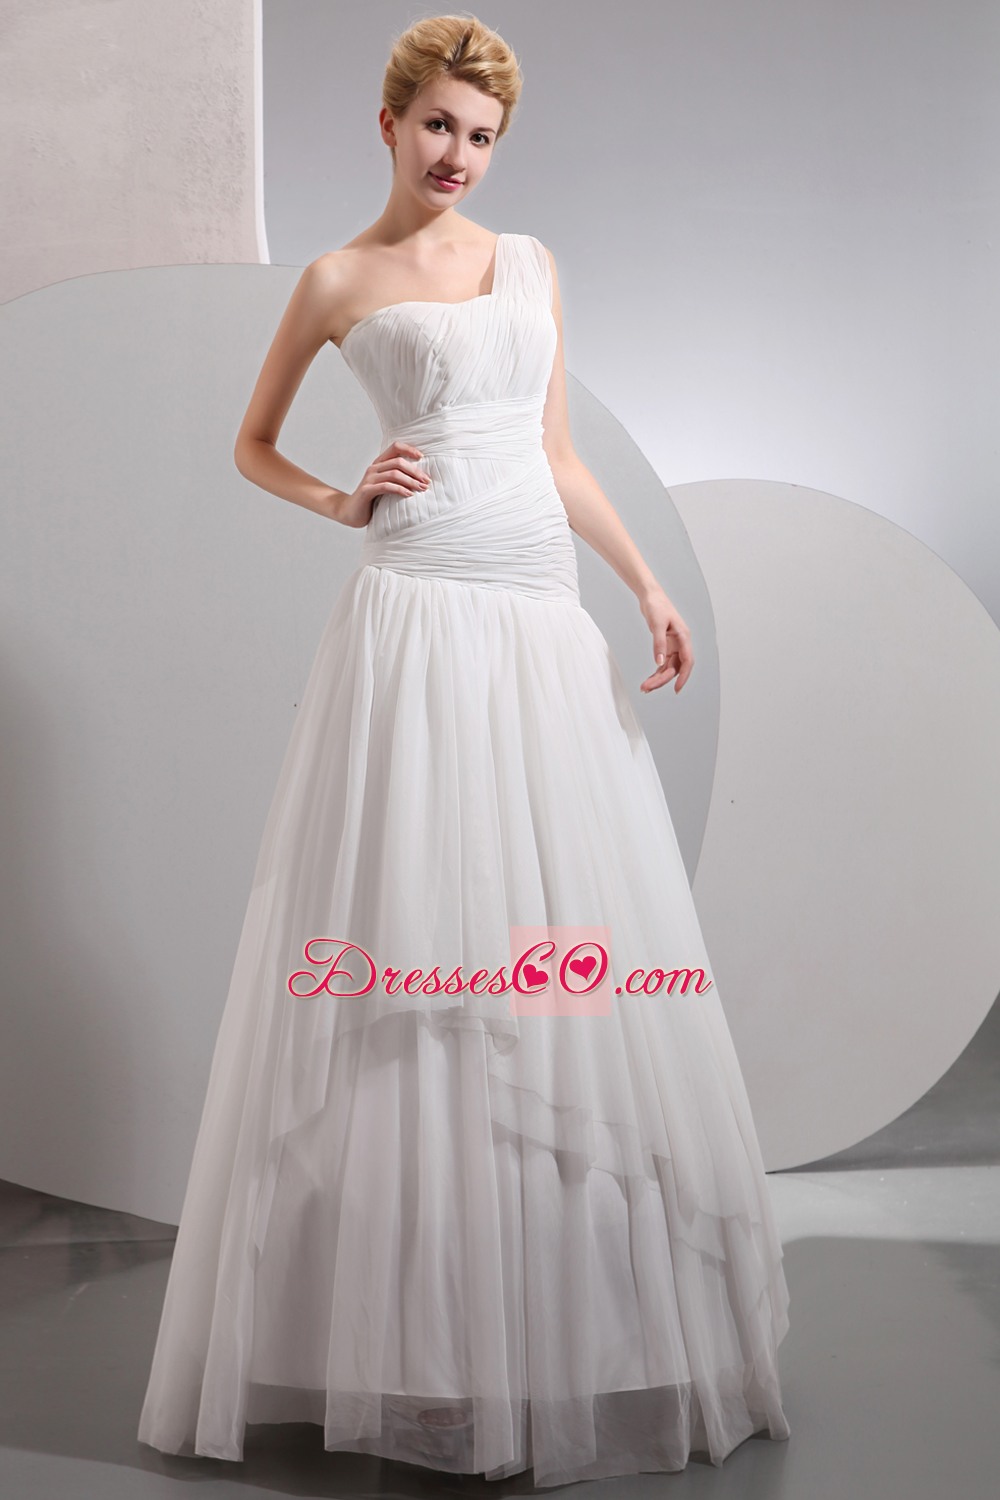 Beautiful A-line One Shoulder Long Chiffon Wedding Dress